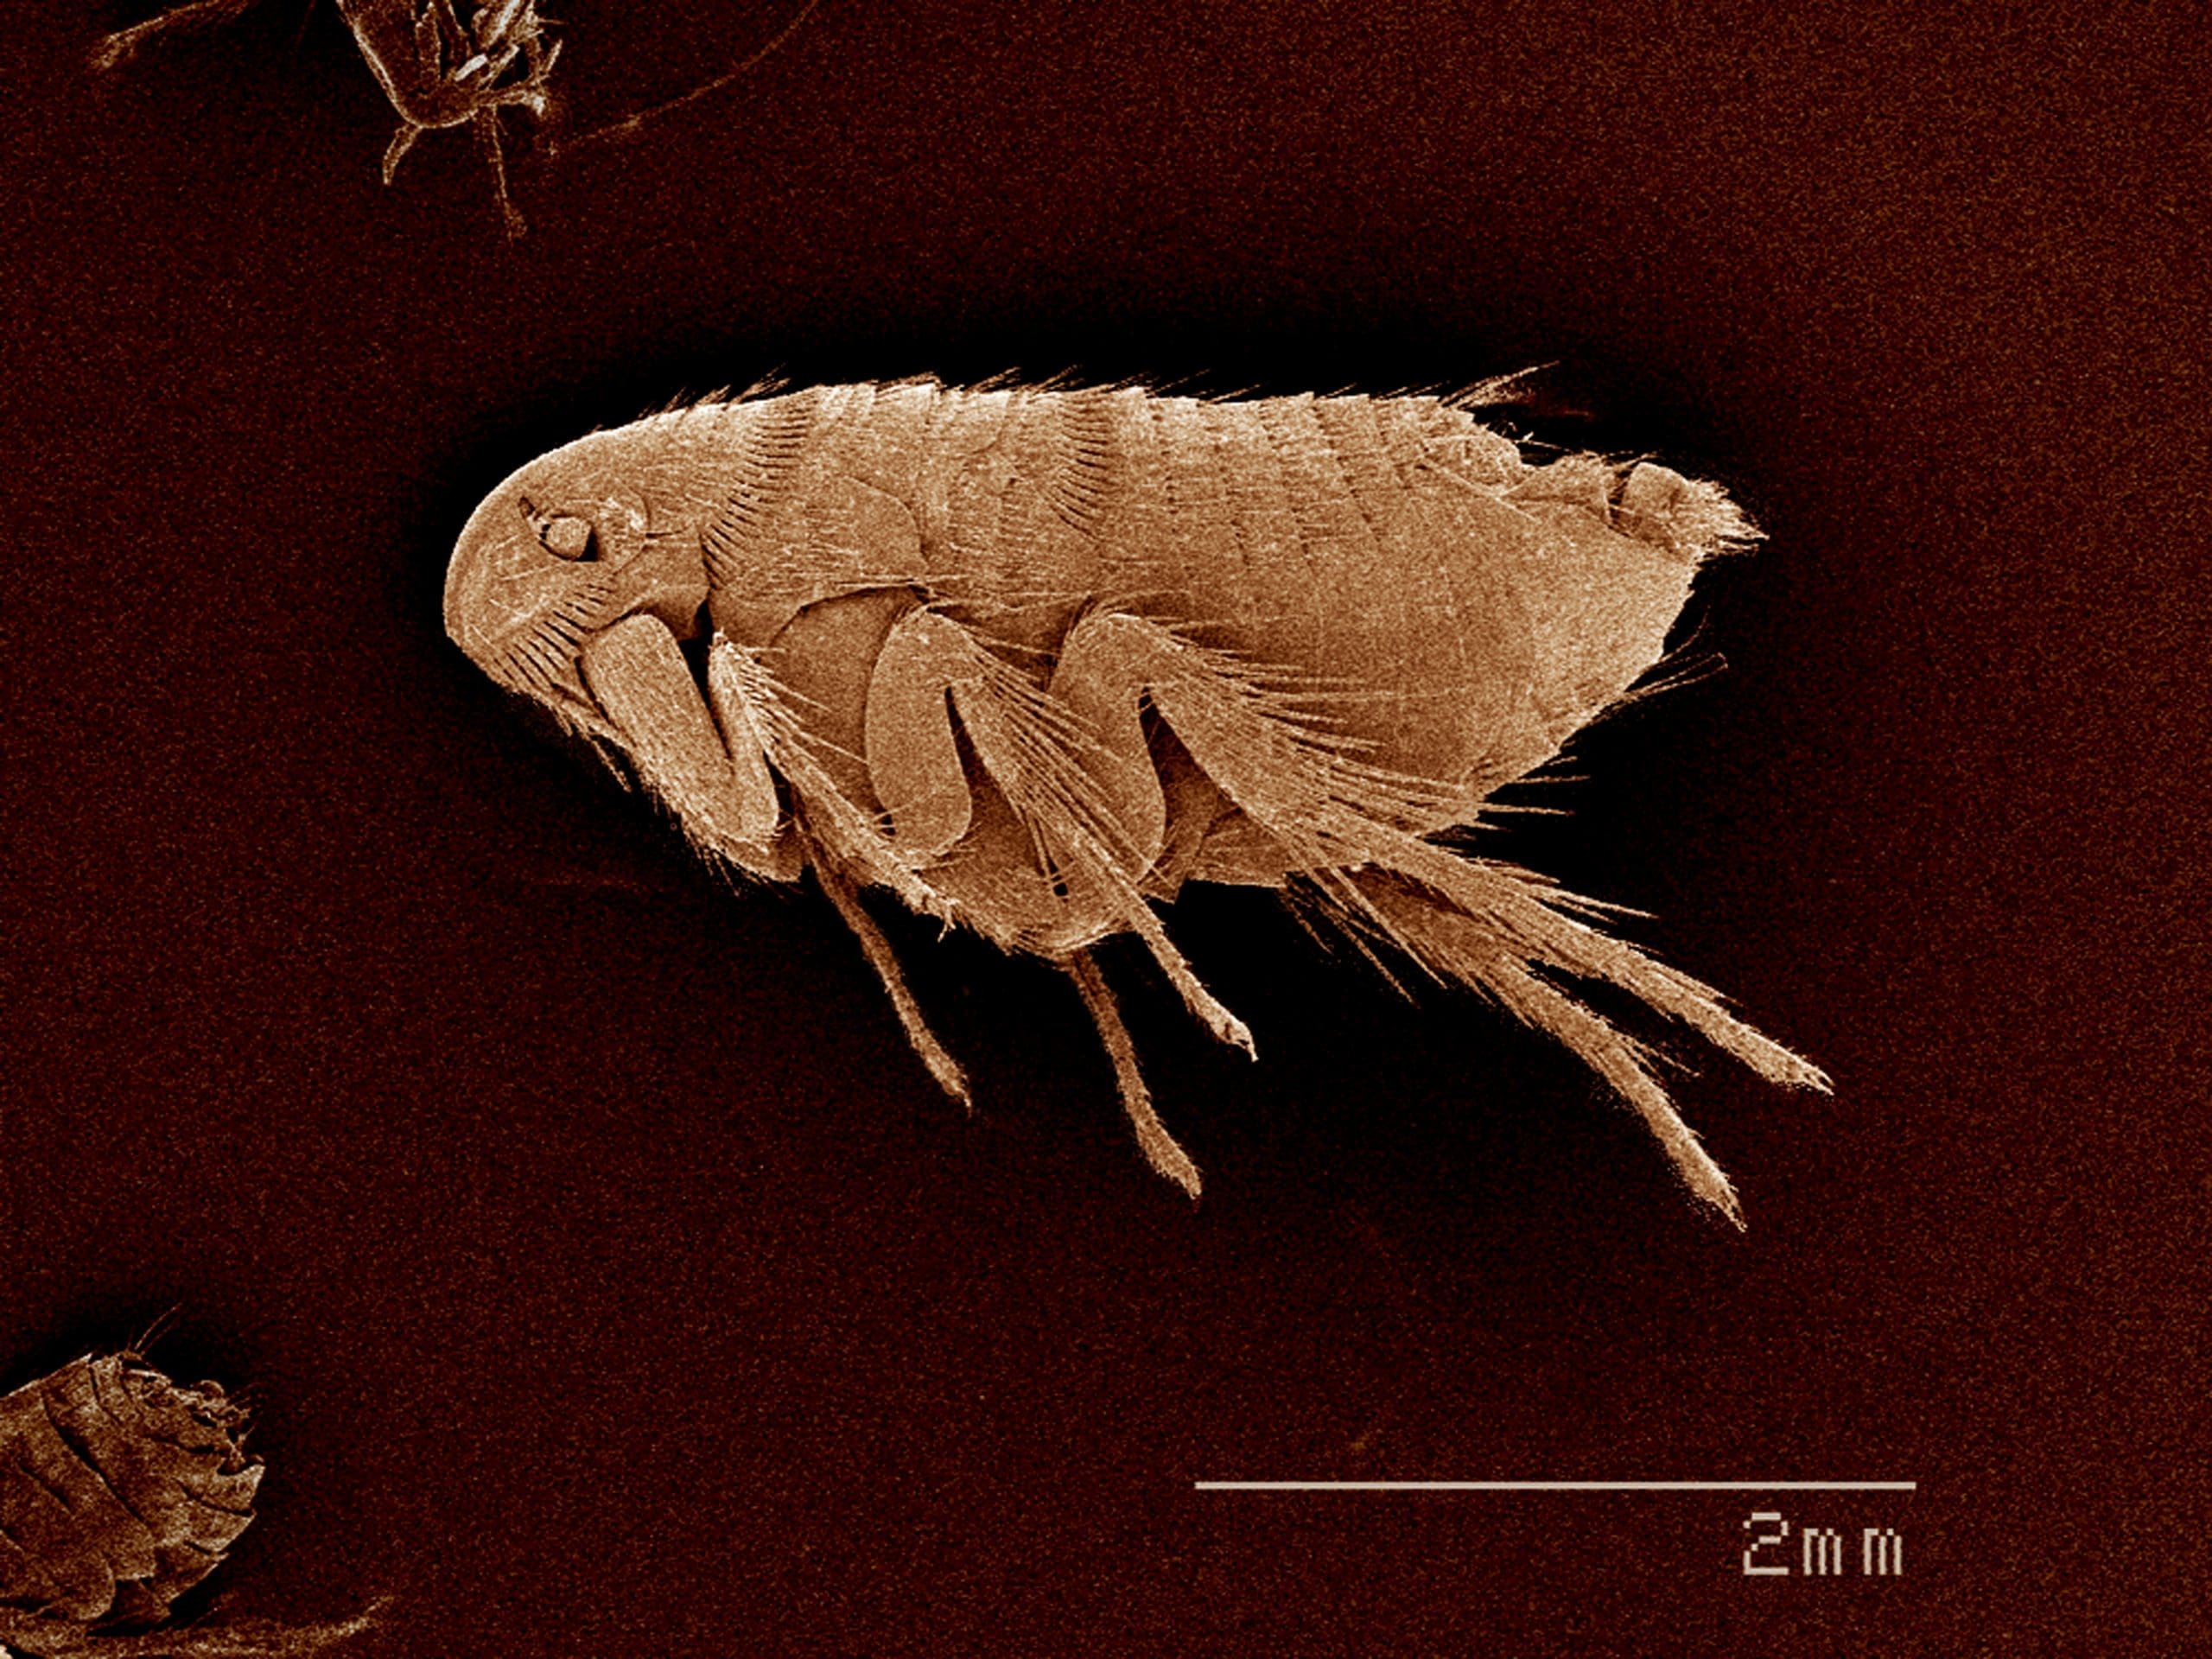 Taken in Johnston, Rhode Island, an image of a flea, Siphonaptera SEM